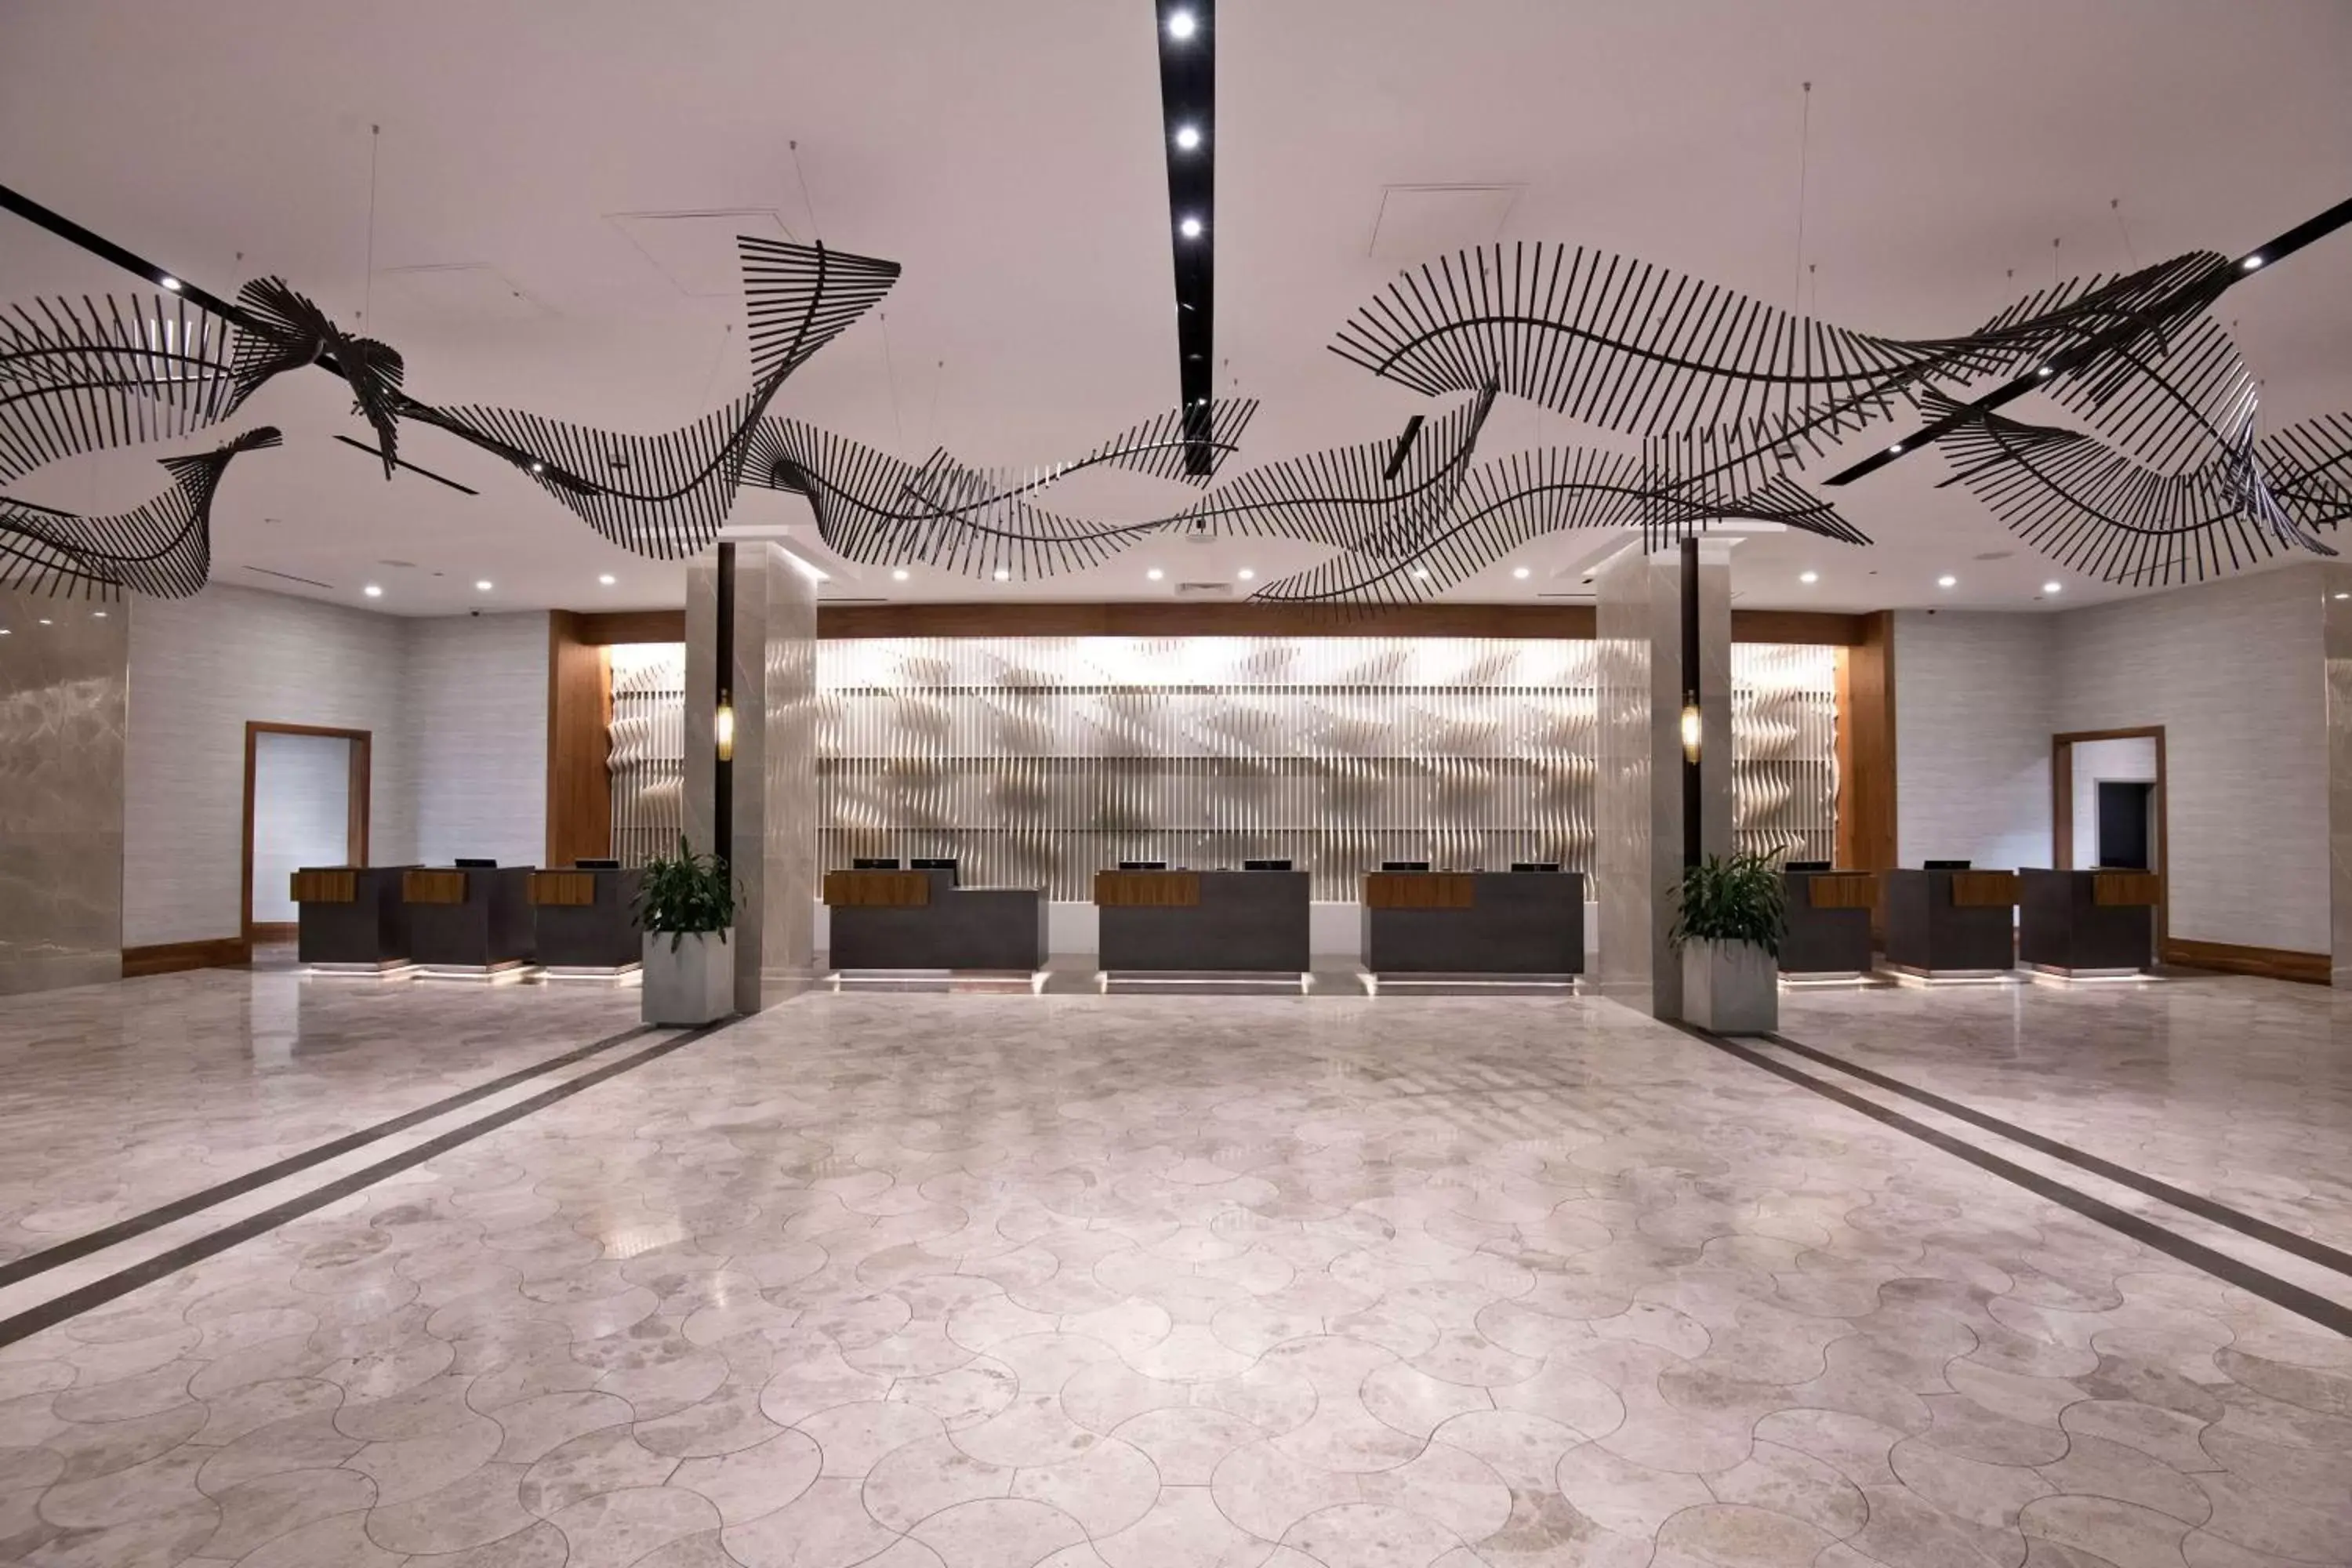 Lobby or reception, Banquet Facilities in Hilton Orlando